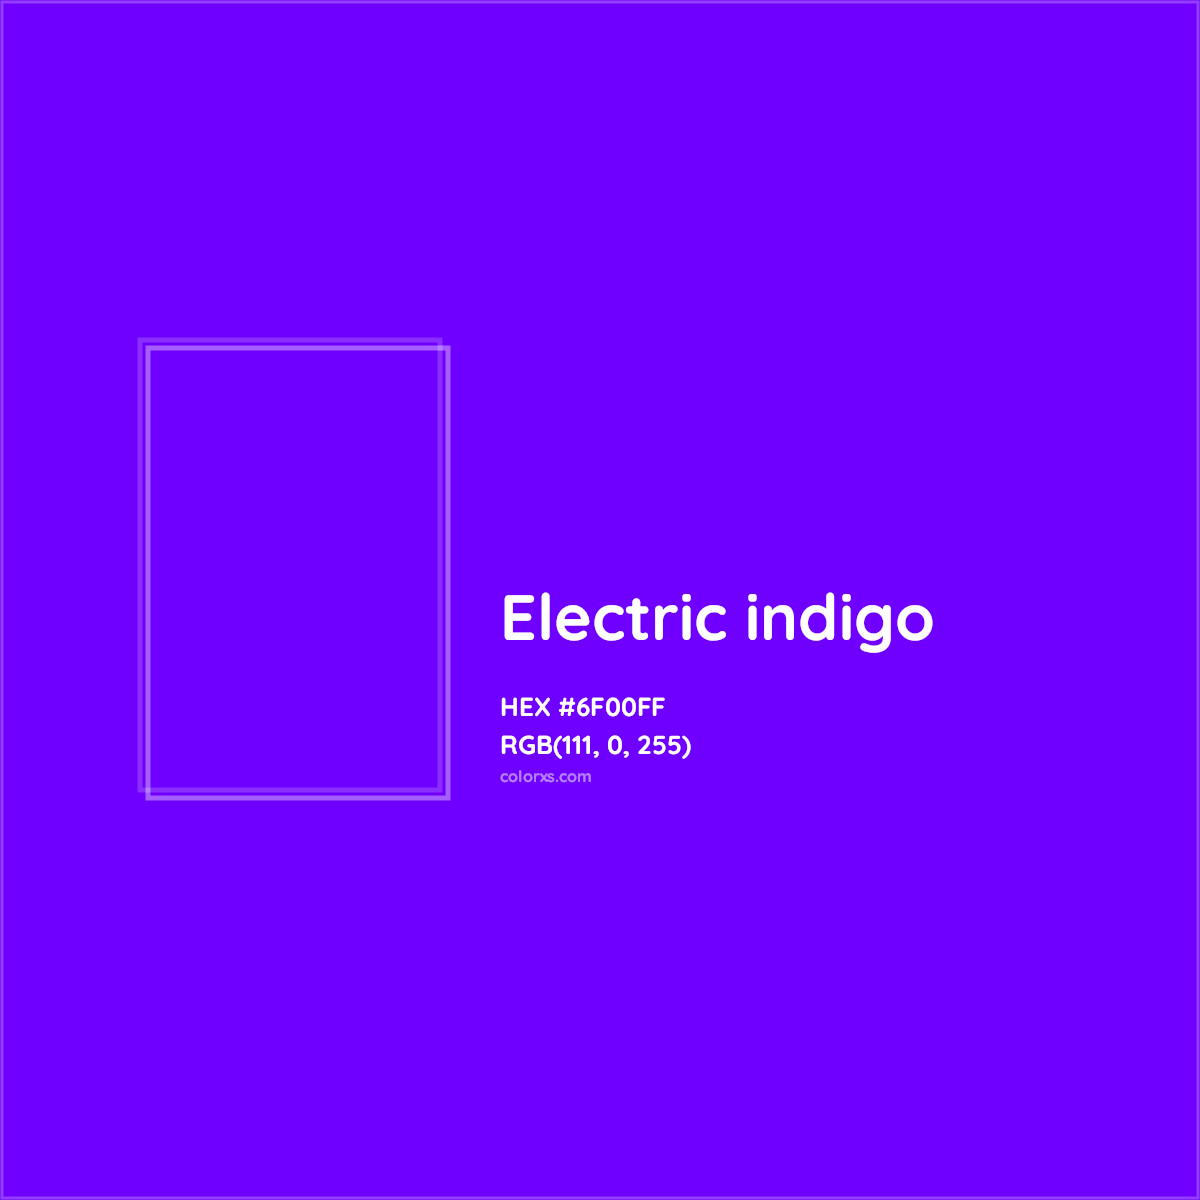 HEX #6F00FF Electric indigo Color - Color Code